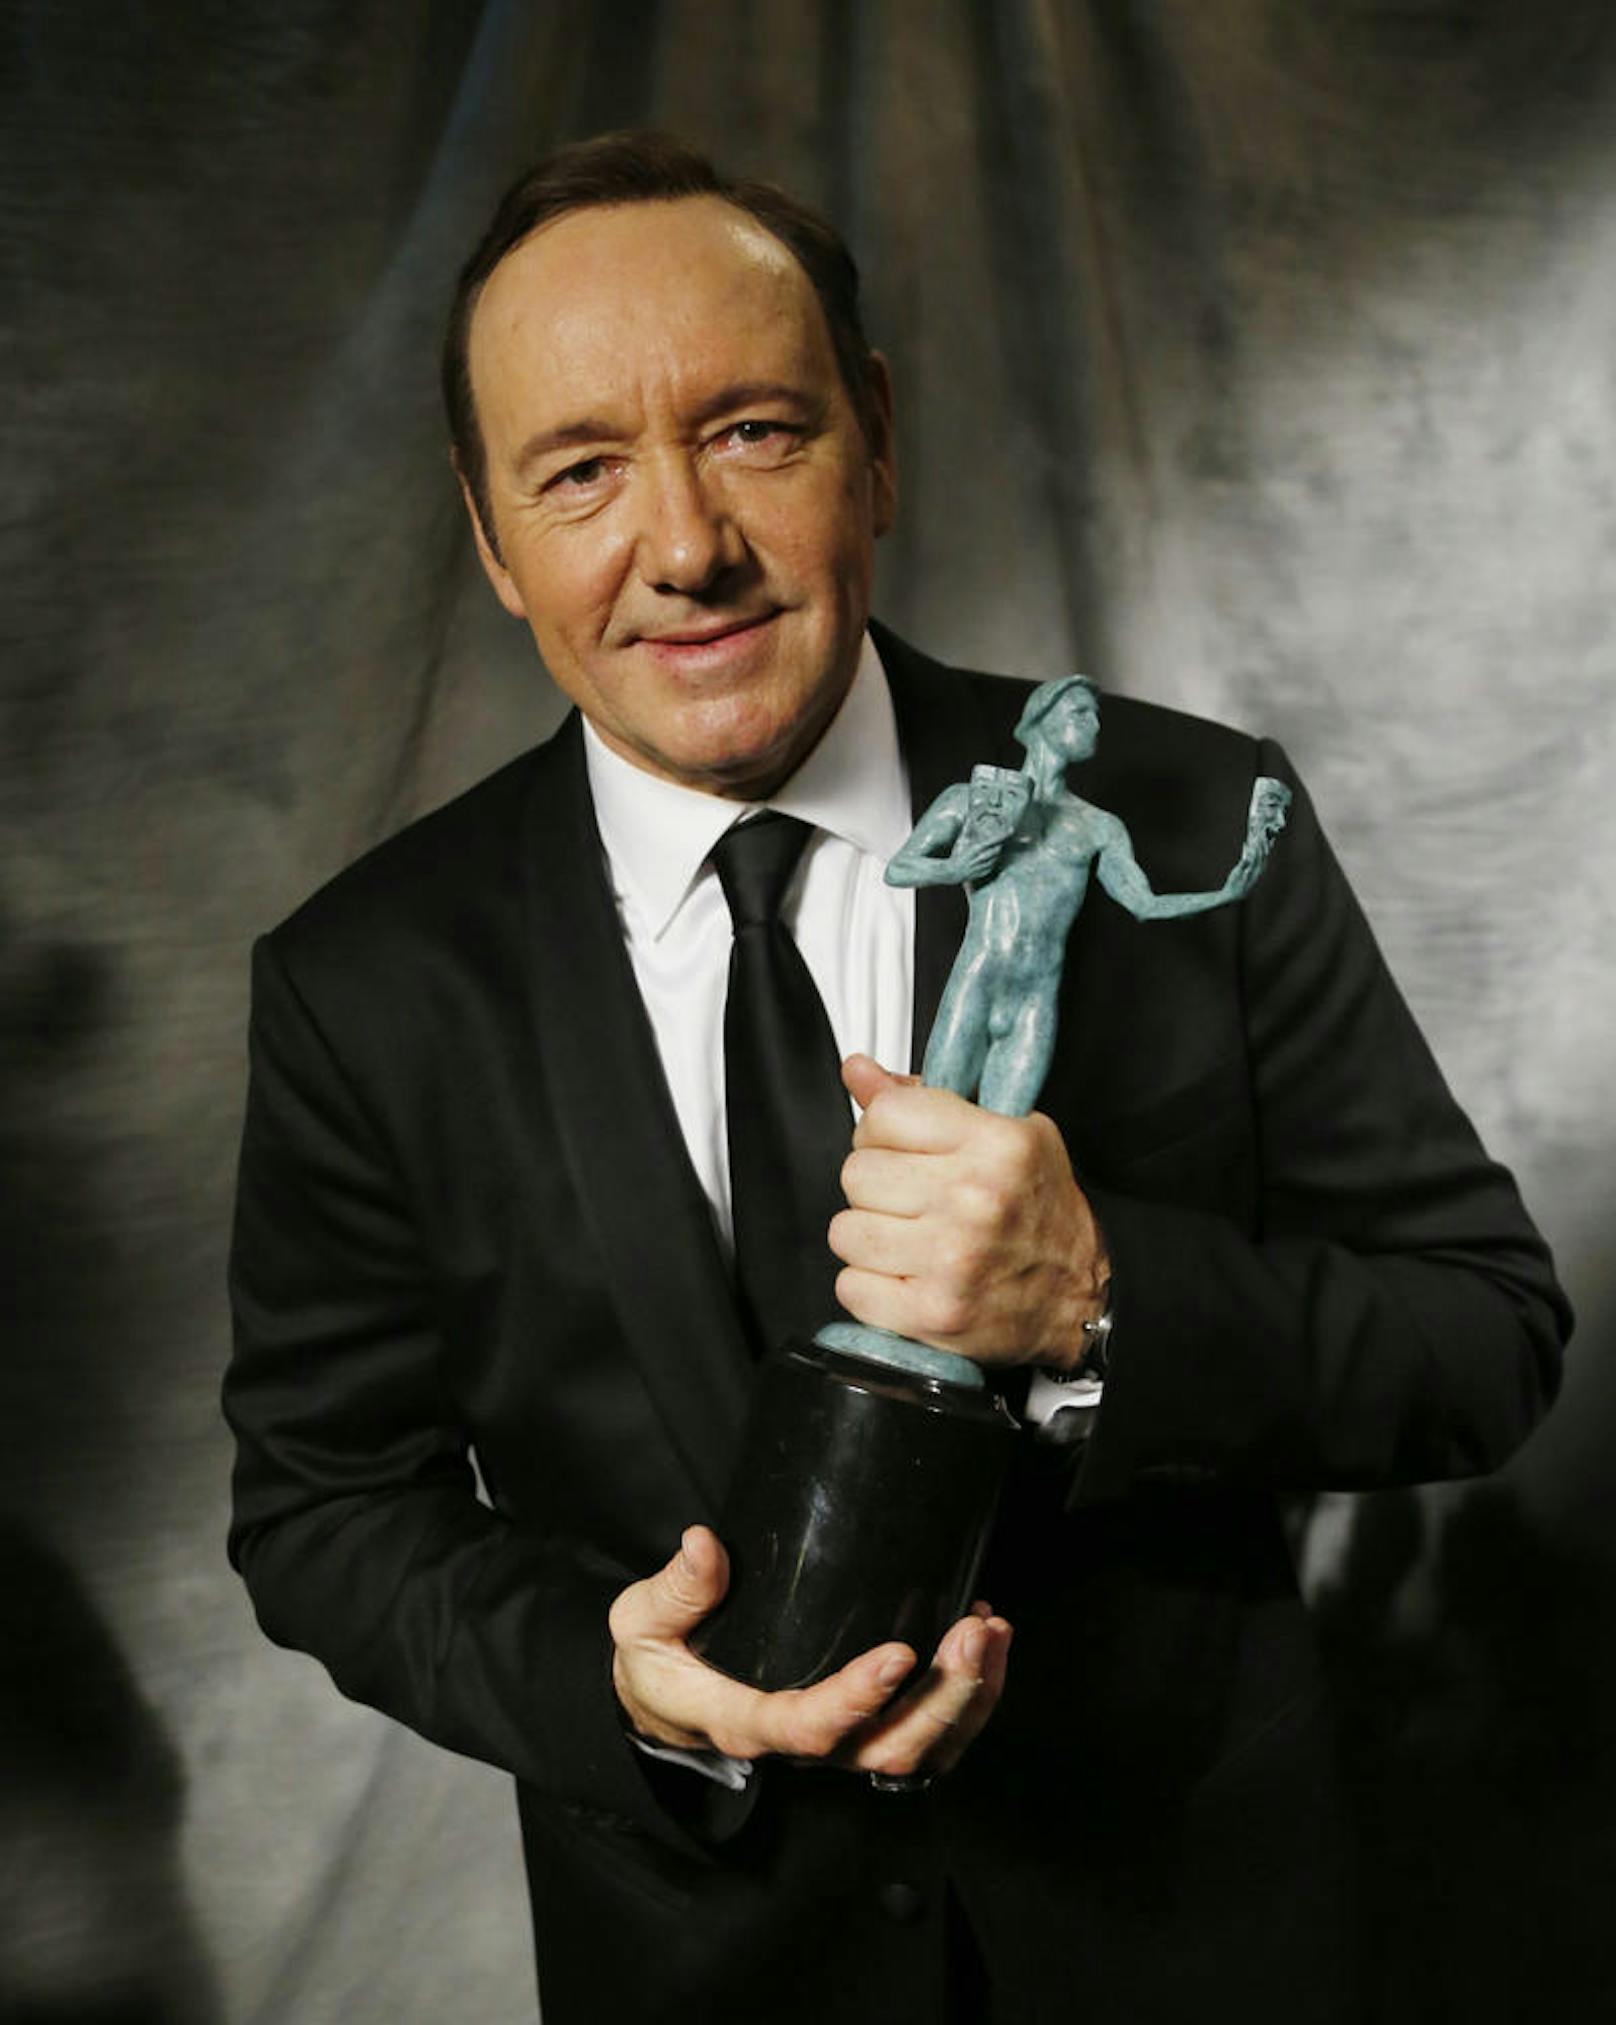 Kevin Spacey wird als bester Darsteller einer Dramaserie ausgezeichnet.